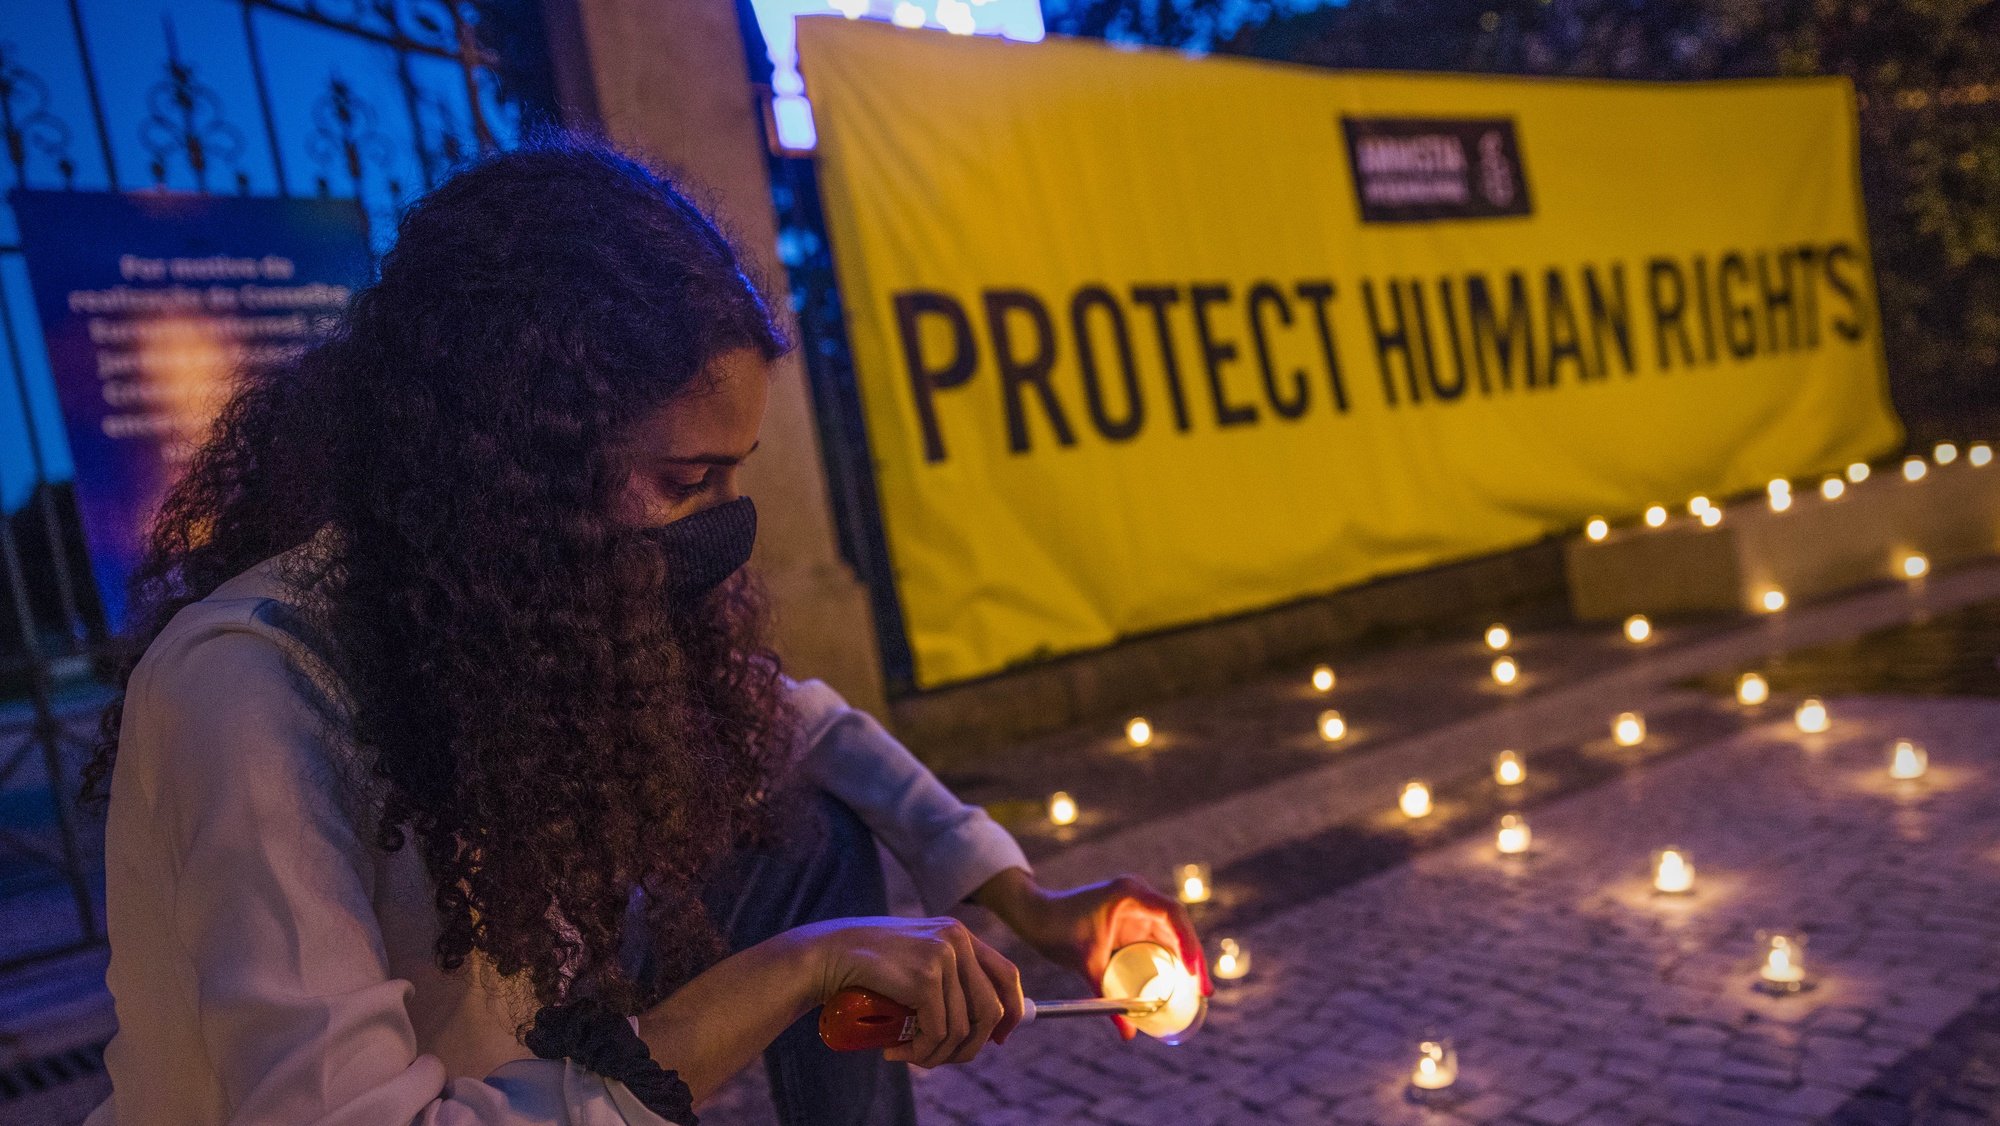 Vigília pela proteção dos direitos humanos na Índia, Porto, 6 de maio de 2021. A Amnistia Internacional promove uma vigília para &quot;pressionar o governo indiano a terminar com a repressão às pessoas que defendem os direitos humanos, bem como a todos os dissidentes de opinião naquele país.&quot;. JOSÉ COELHO/LUSA